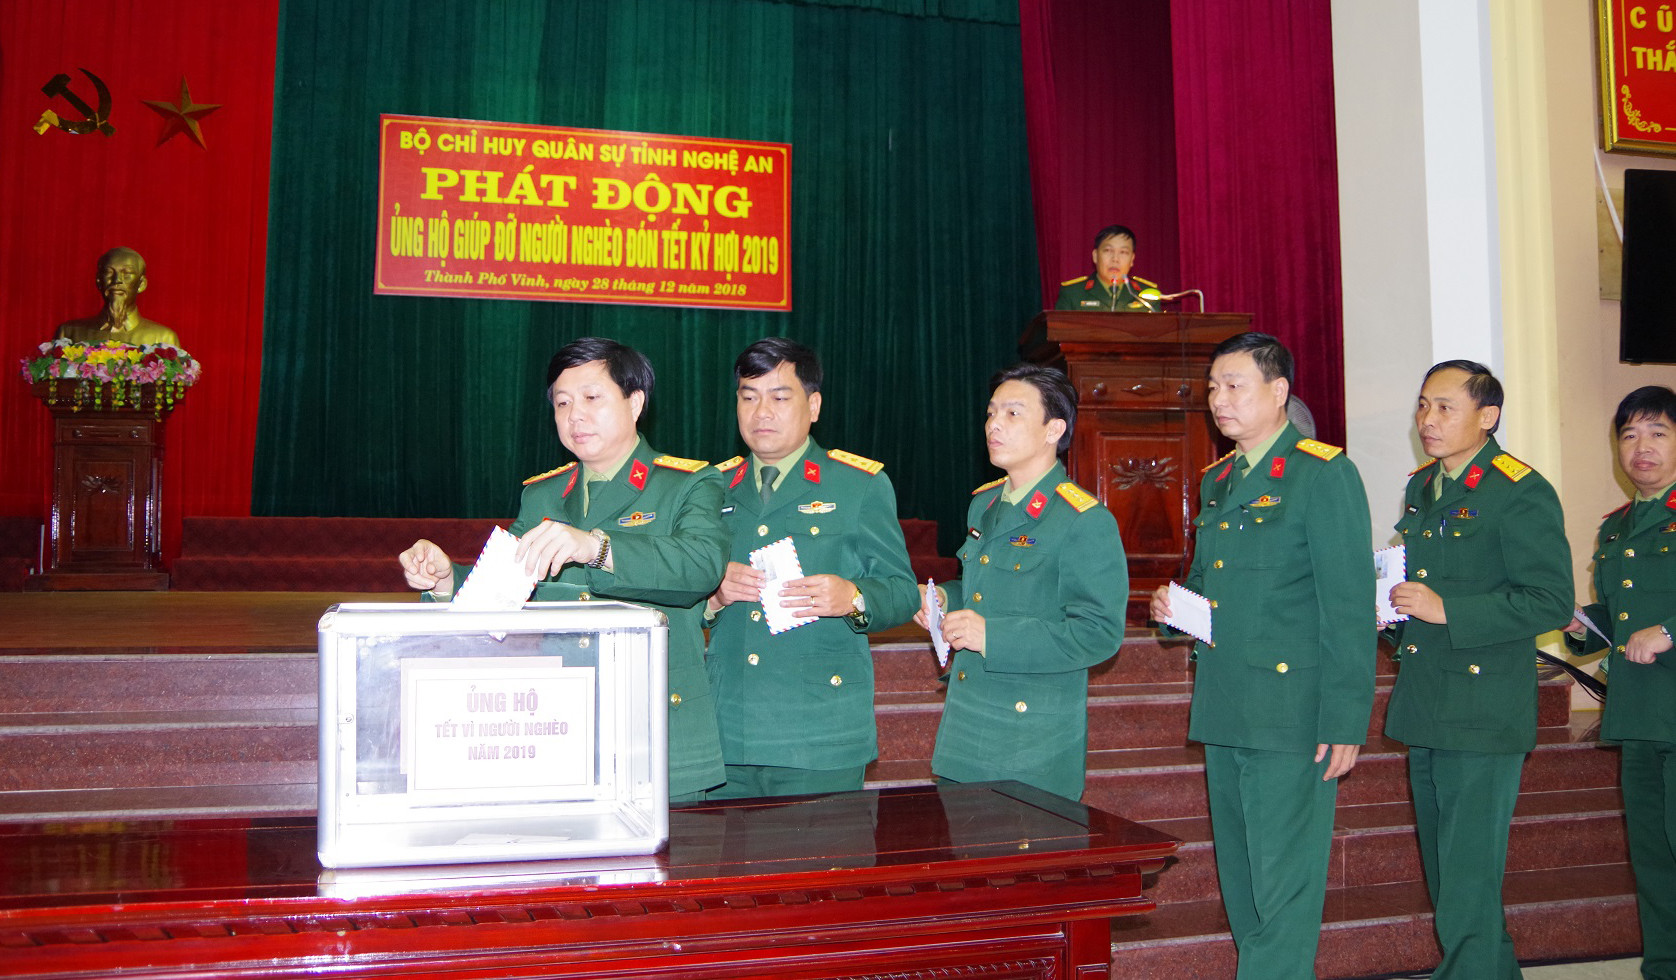 Cán bộ, chiến sỹ cơ quan Bộ CHQS tỉnh quyên góp ủng hộ người nghèo đón Tết Nguyên đán Kỷ Hợi năm 2019. Ảnh: Phong Quang